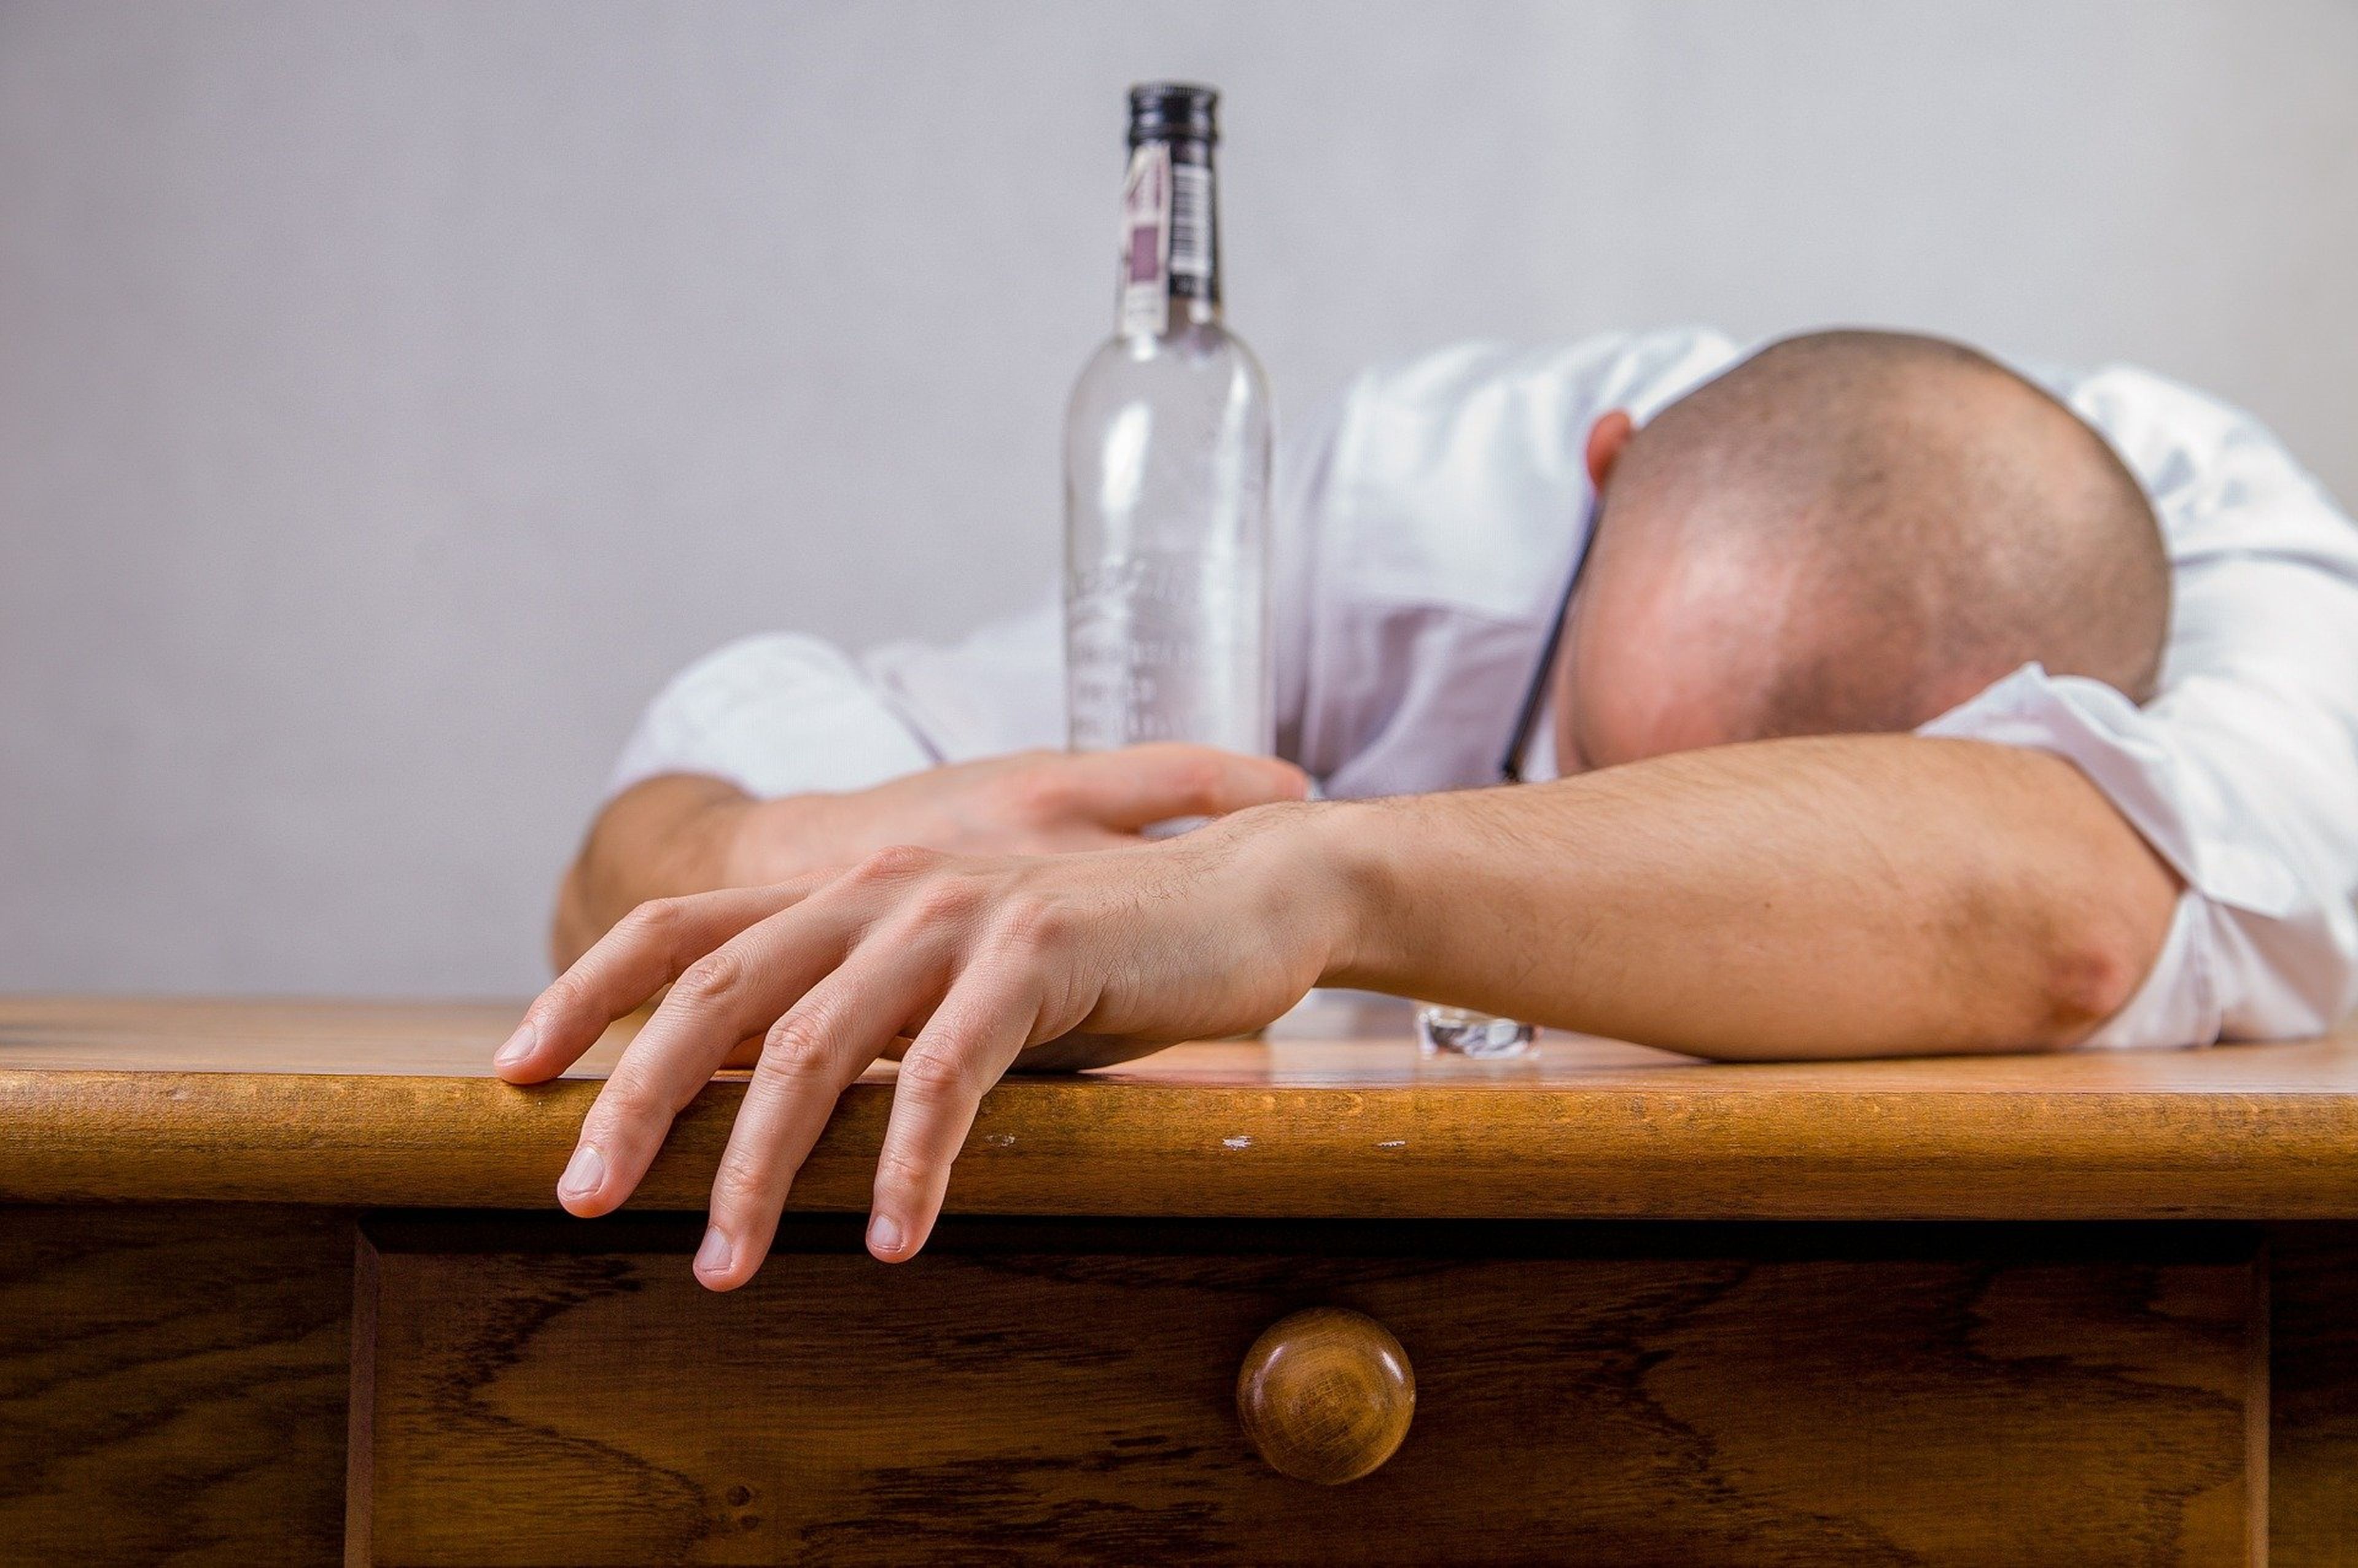 Una persona tirada en una mesa con una botella de alcohol.